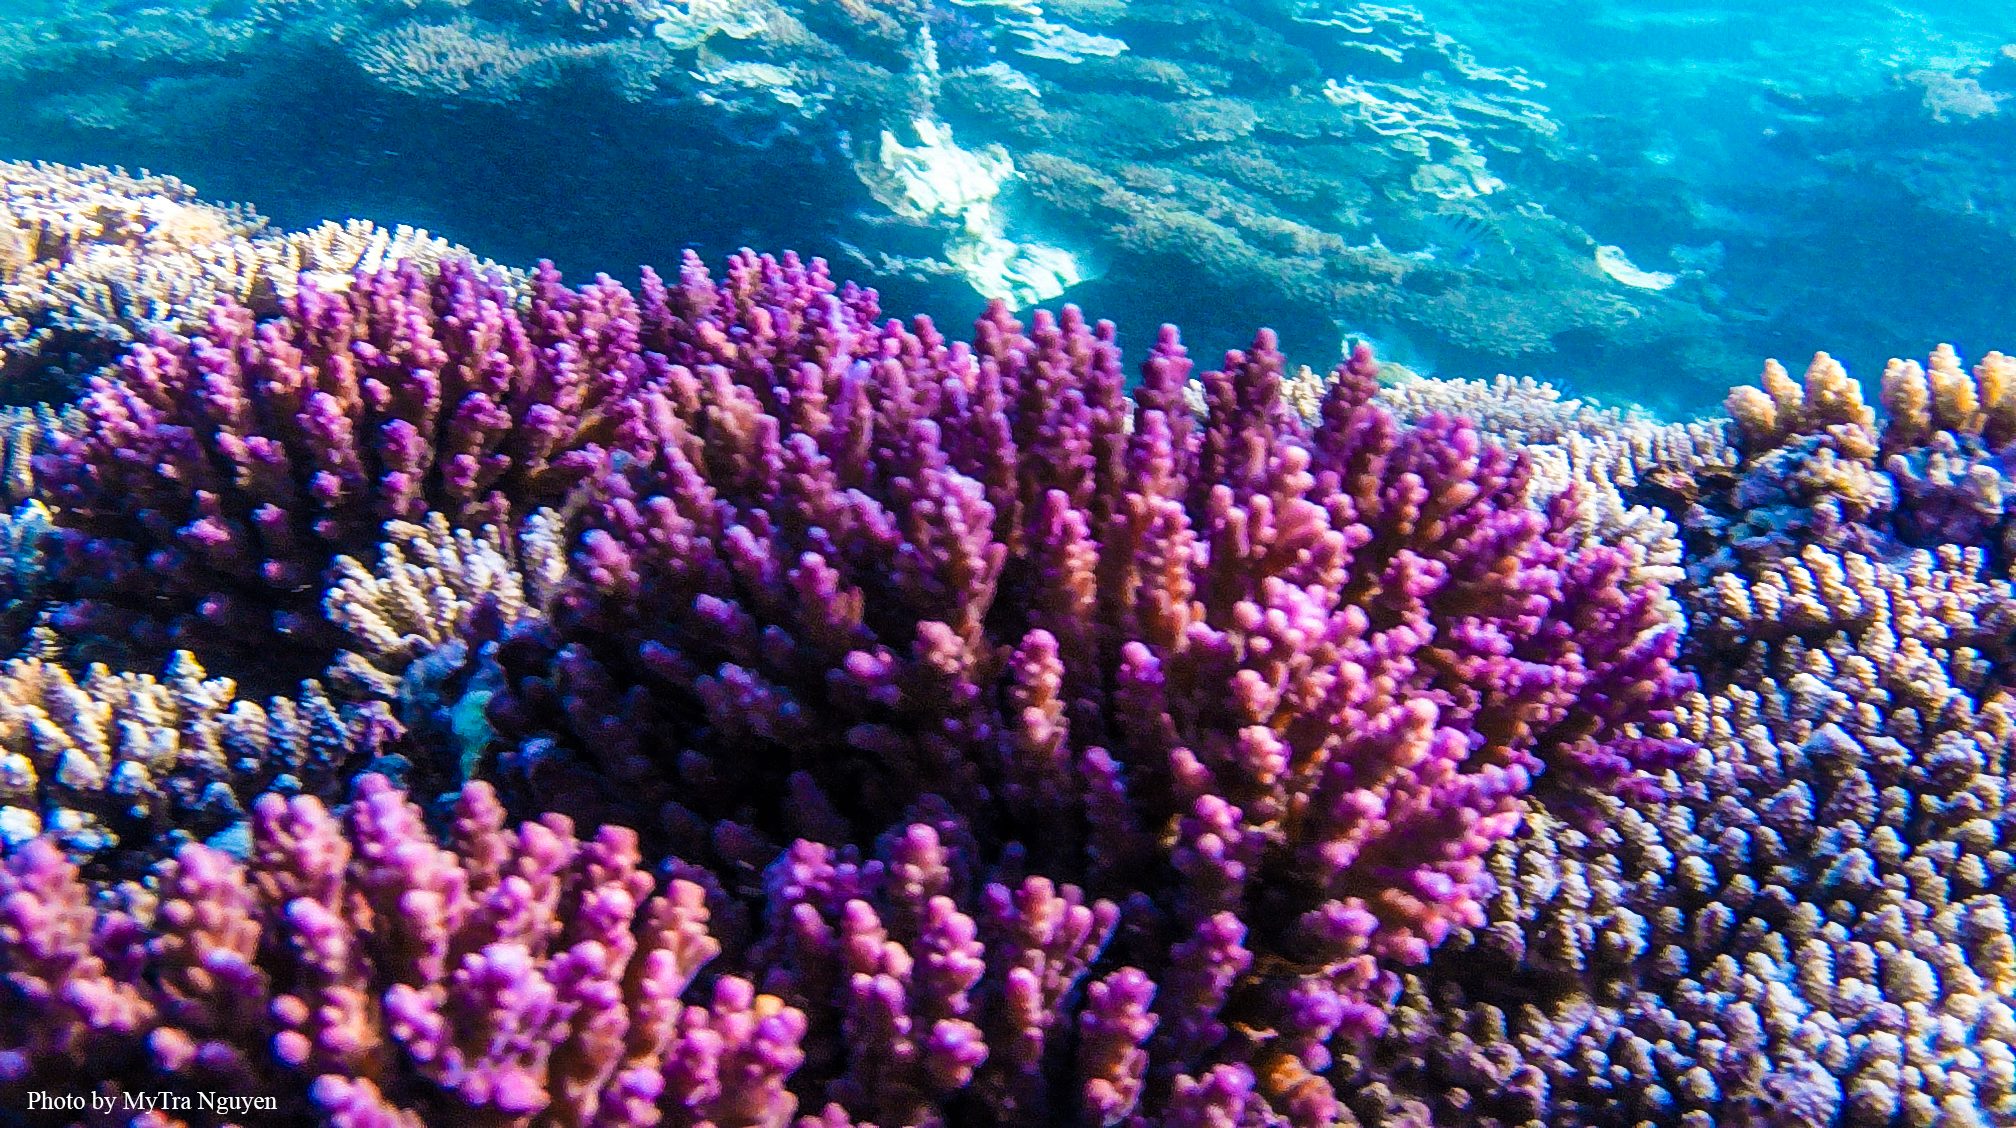 Bức tranh về lặn biển và san hô sẽ khiến bạn bị cuốn hút bởi sự đa dạng và rực rỡ của màu sắc và sinh vật biển. Hãy tham gia vào một chuyến phiêu lưu trên dưới đại dương với những con cá vẹt, san hô đầy màu sắc đang chờ đợi bạn.